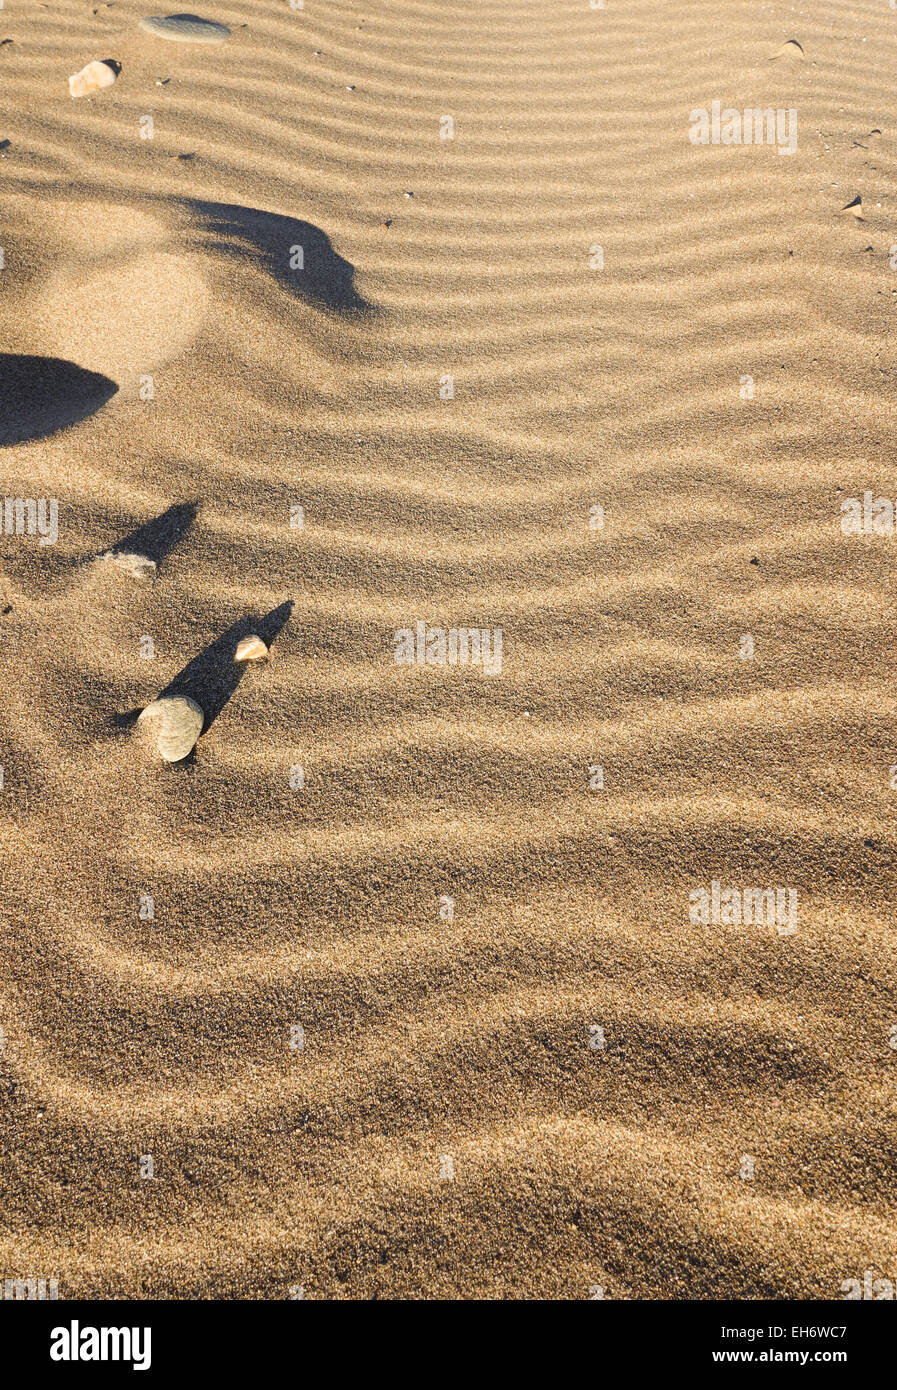 Compte tenu de faible lumière ombre de pierres, sable, vagues formes ondulatoires formé par le vent sur la plage, à l'Espagne. Banque D'Images